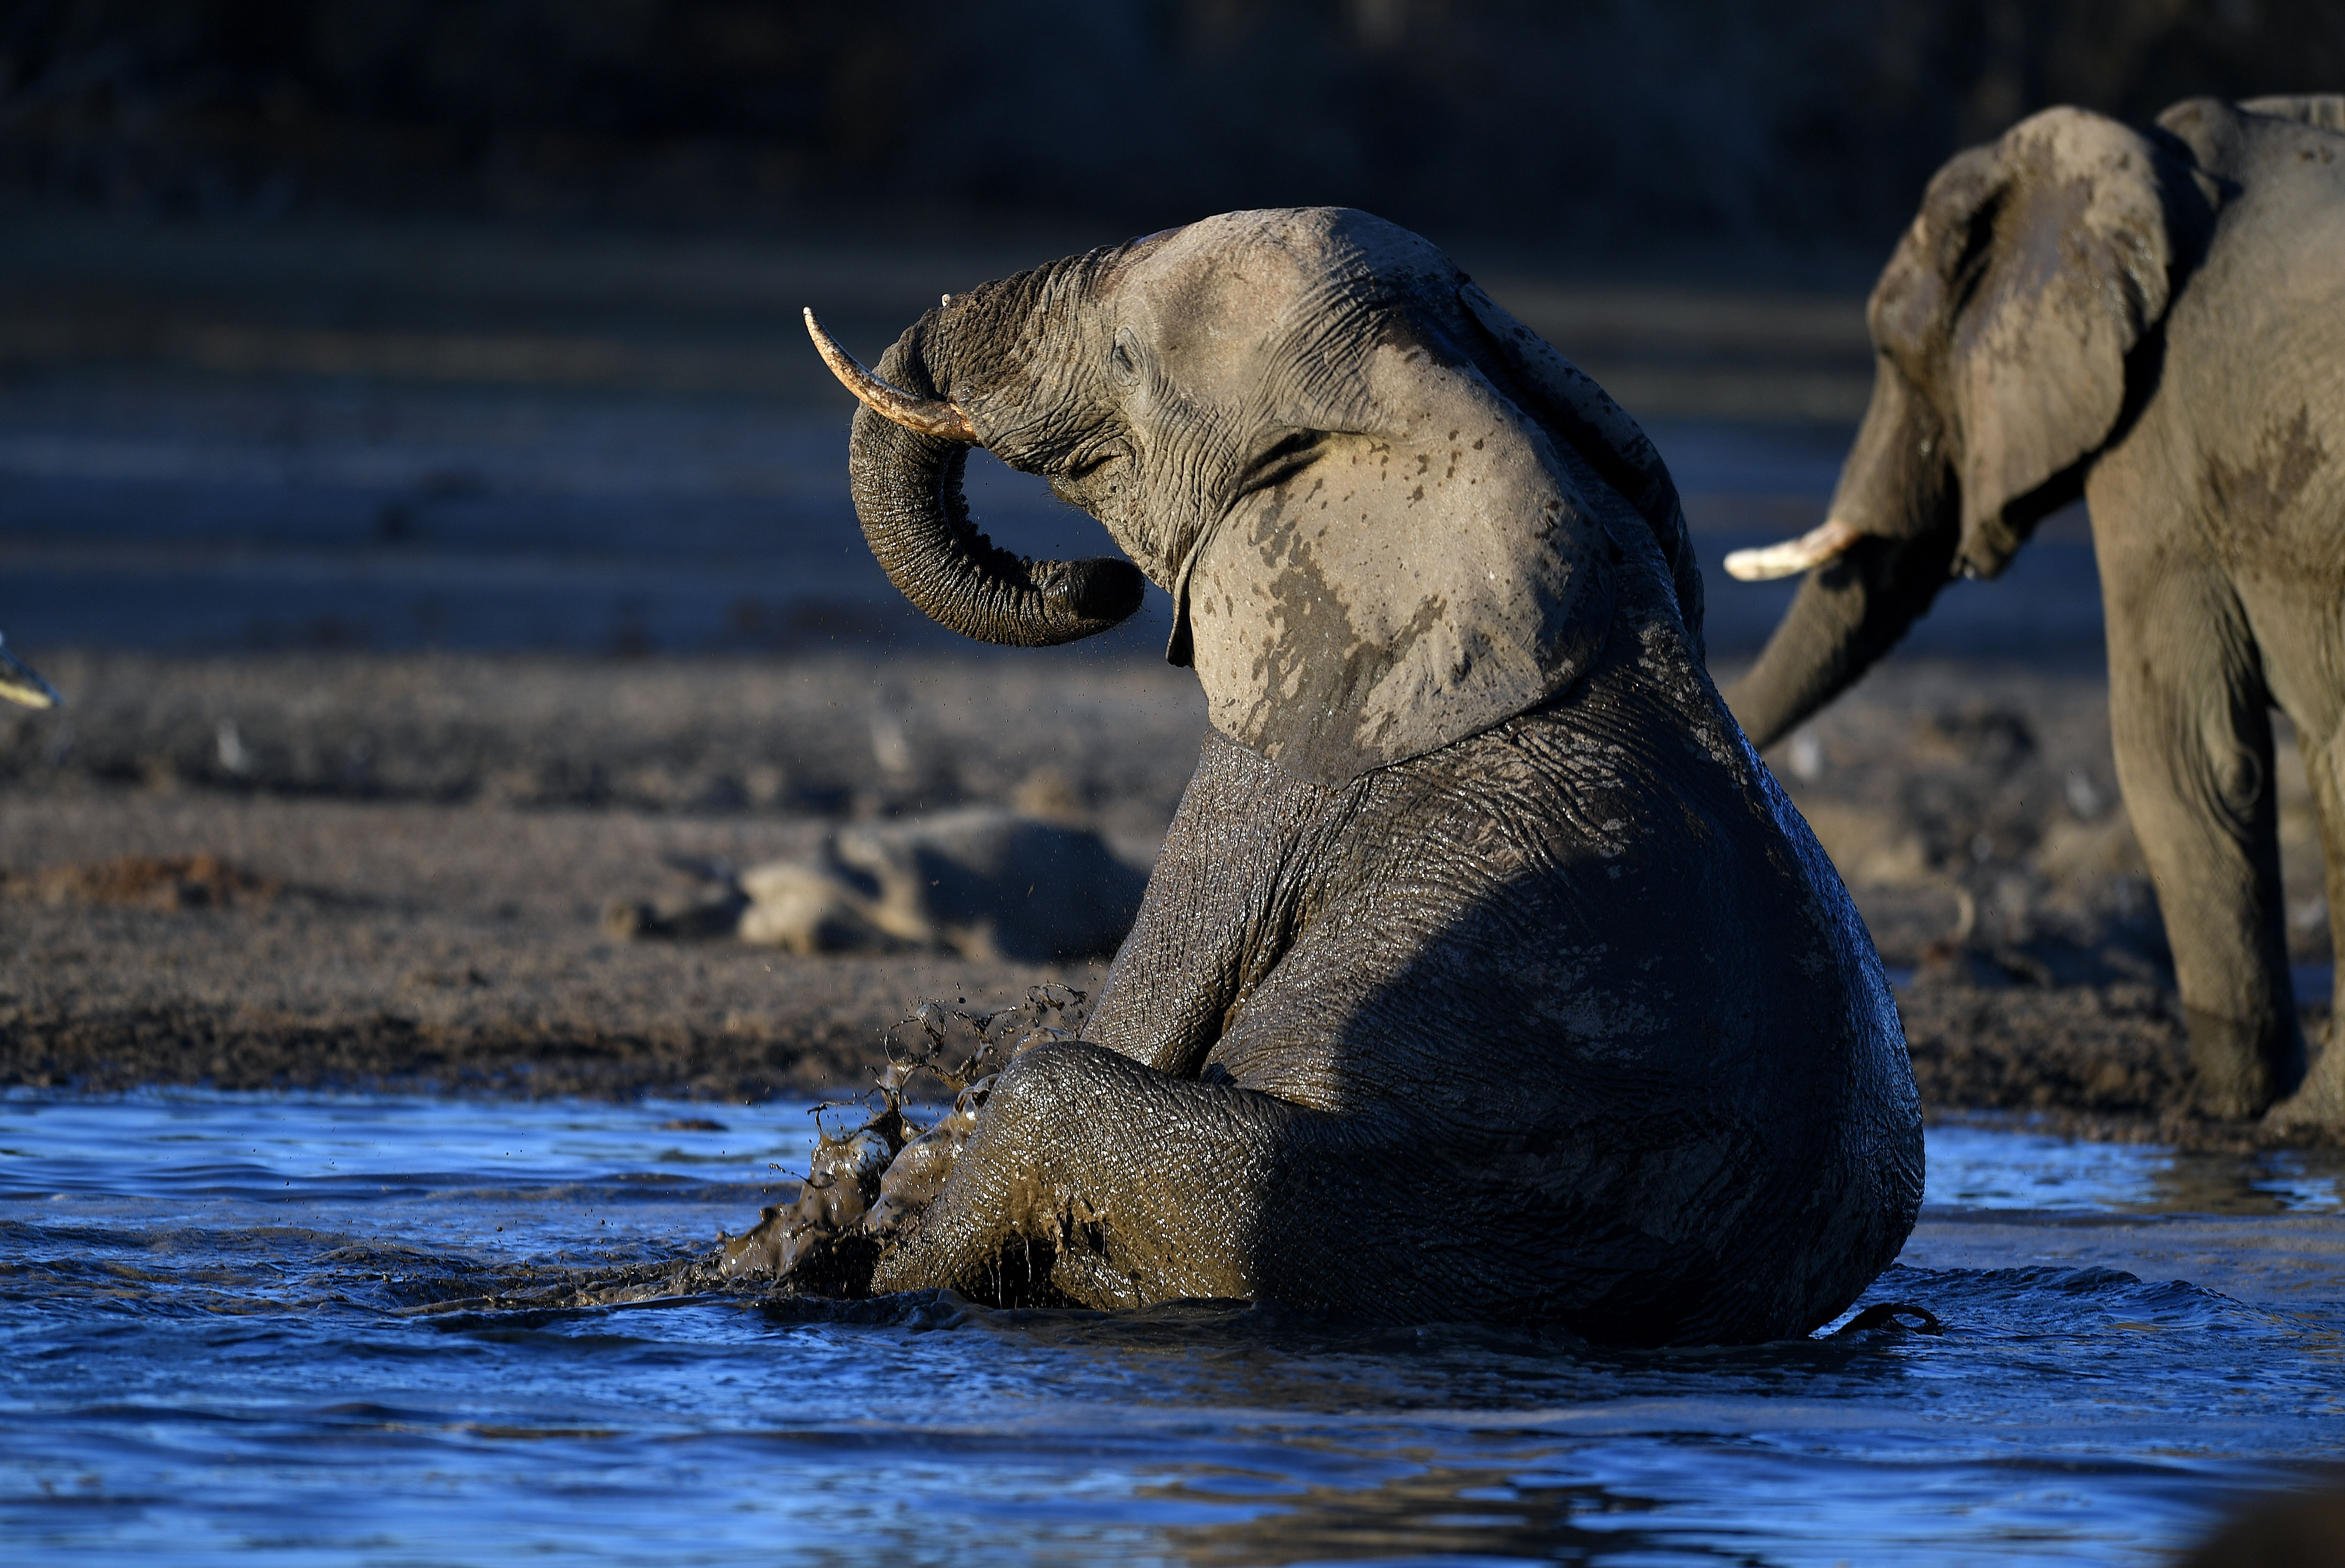 Rejtélyes elefántpusztulás okát vizsgálják Botswanában